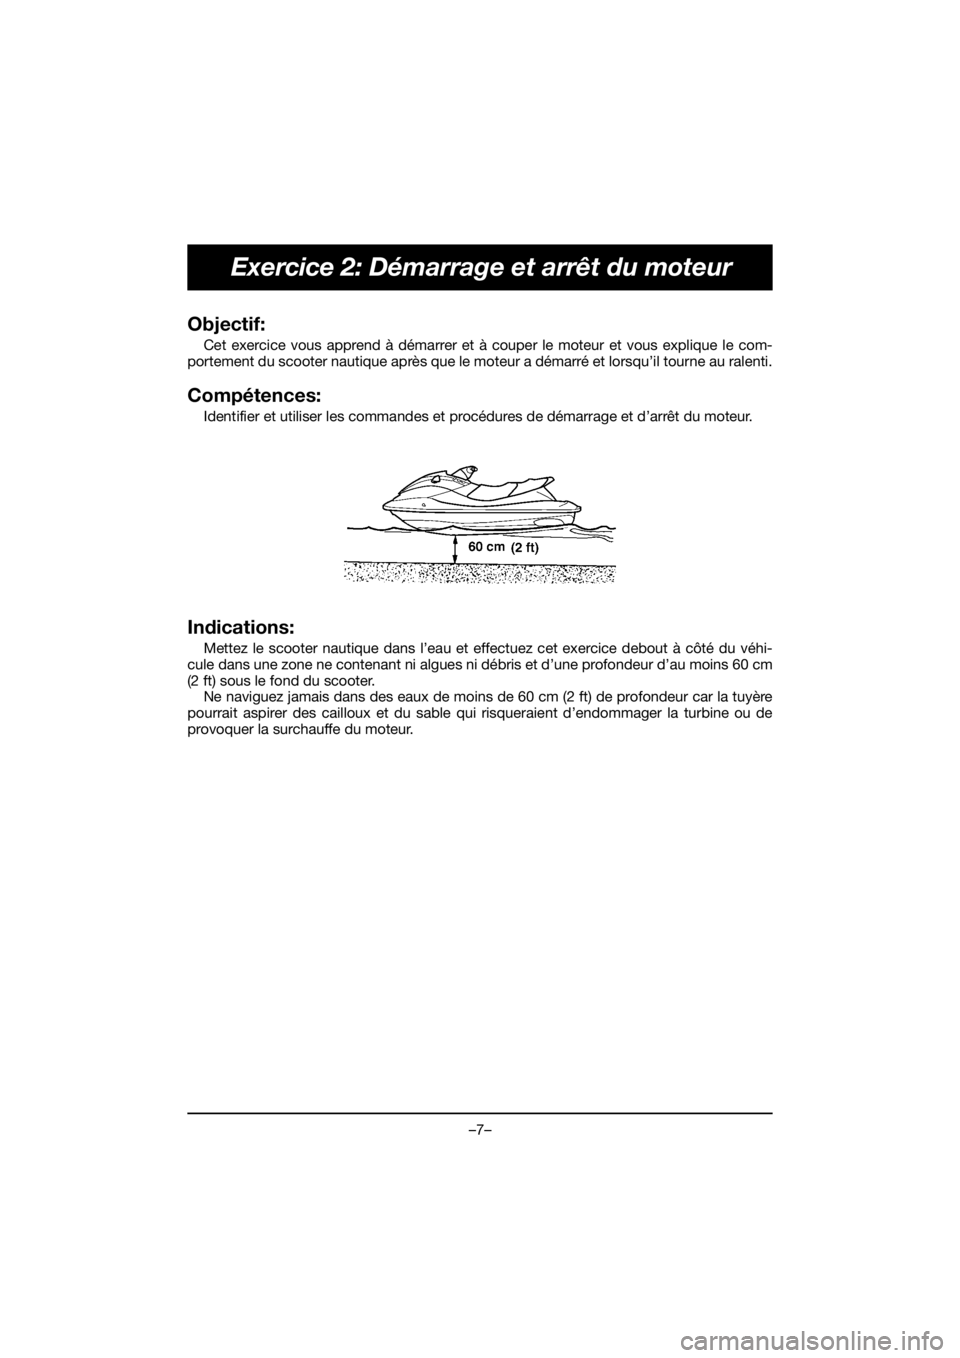 YAMAHA FJR1300 2020  Owners Manual –7–
Exercice 2: Démarrage et arrêt du moteur
Objectif: 
Cet exercice vous apprend à démarrer et à couper le moteur et vous explique le com-
portement du scooter nautique après que le moteur 